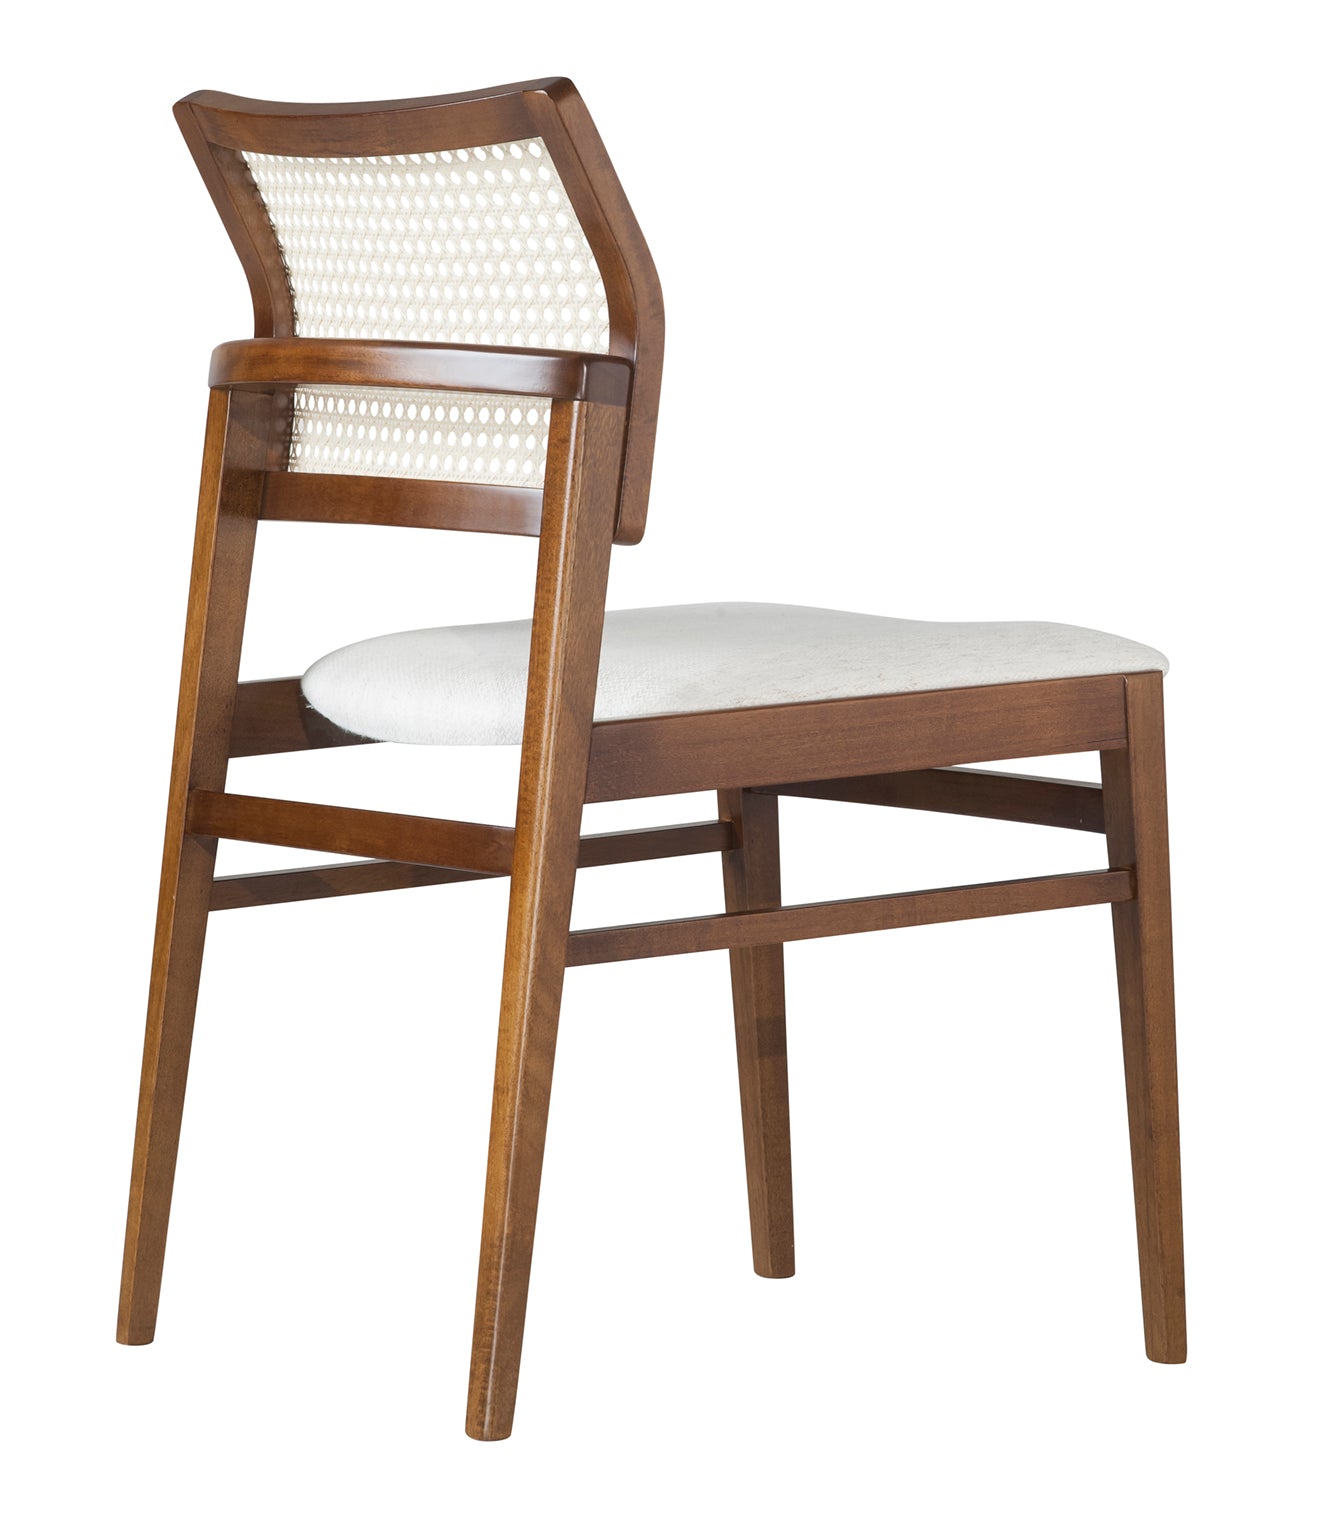 CAD357 ZARA Dining Chair Amendoa/H75 Fabric/Palha Natural